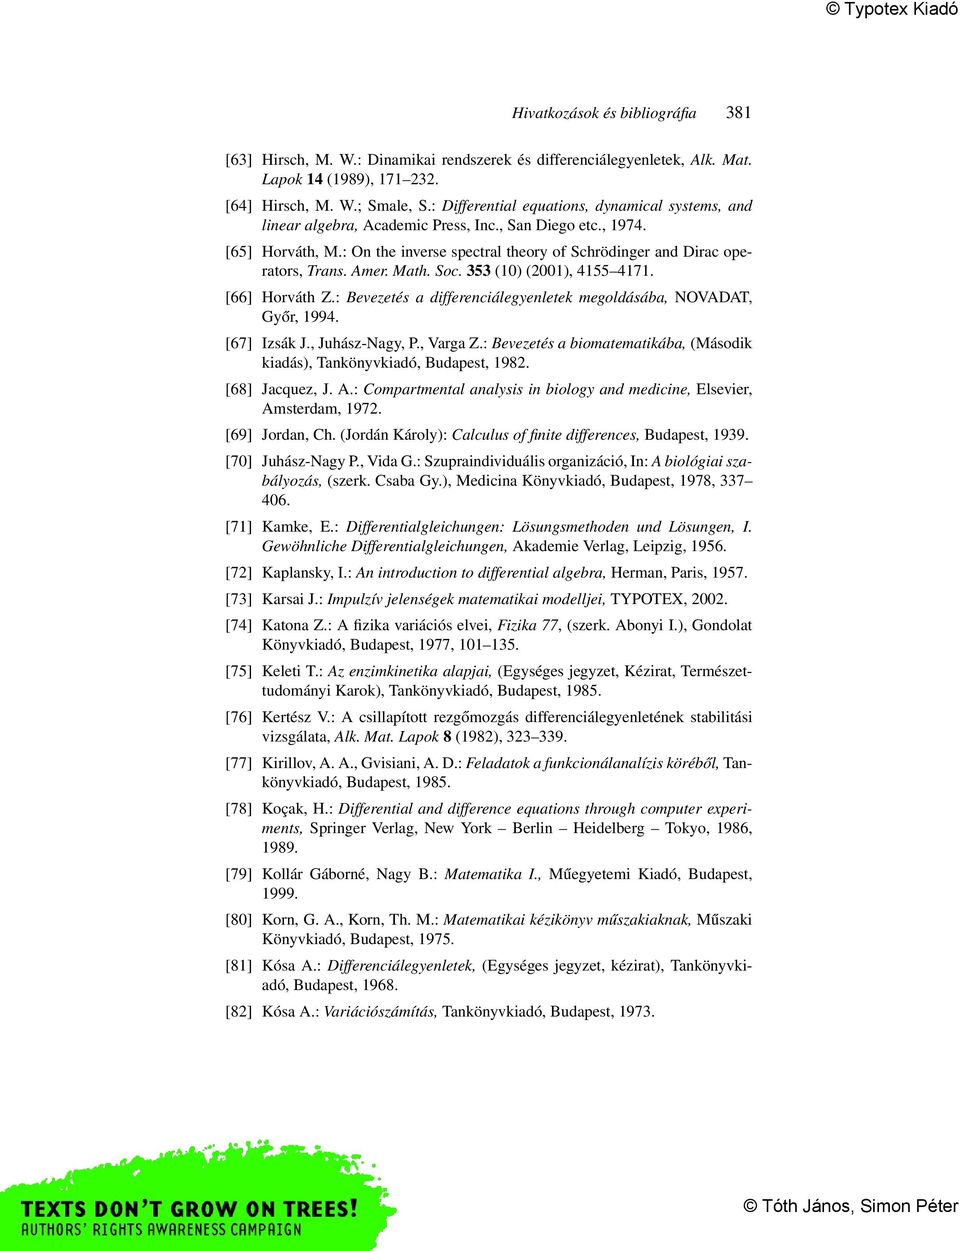 Amer. Math. Soc. 353 (10) (2001), 4155 4171. [66] Horváth Z.: Bevezetés a differenciálegyenletek megoldásába, NOVADAT, Győr, 1994. [67] Izsák J., Juhász-Nagy, P., Varga Z.